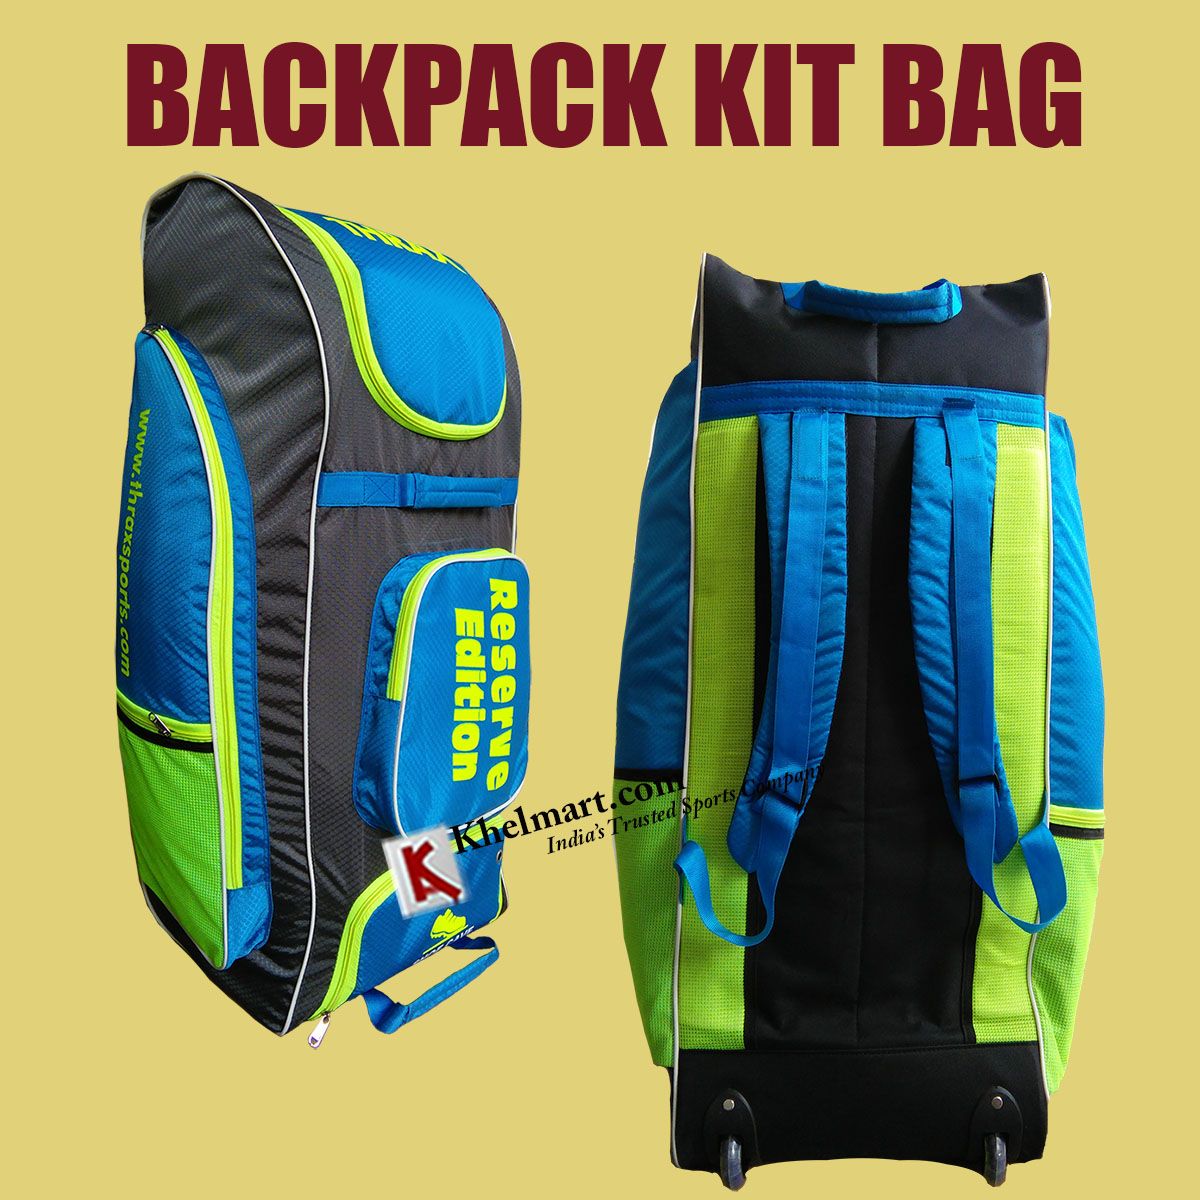 Cricket Bag Buyer's Guide